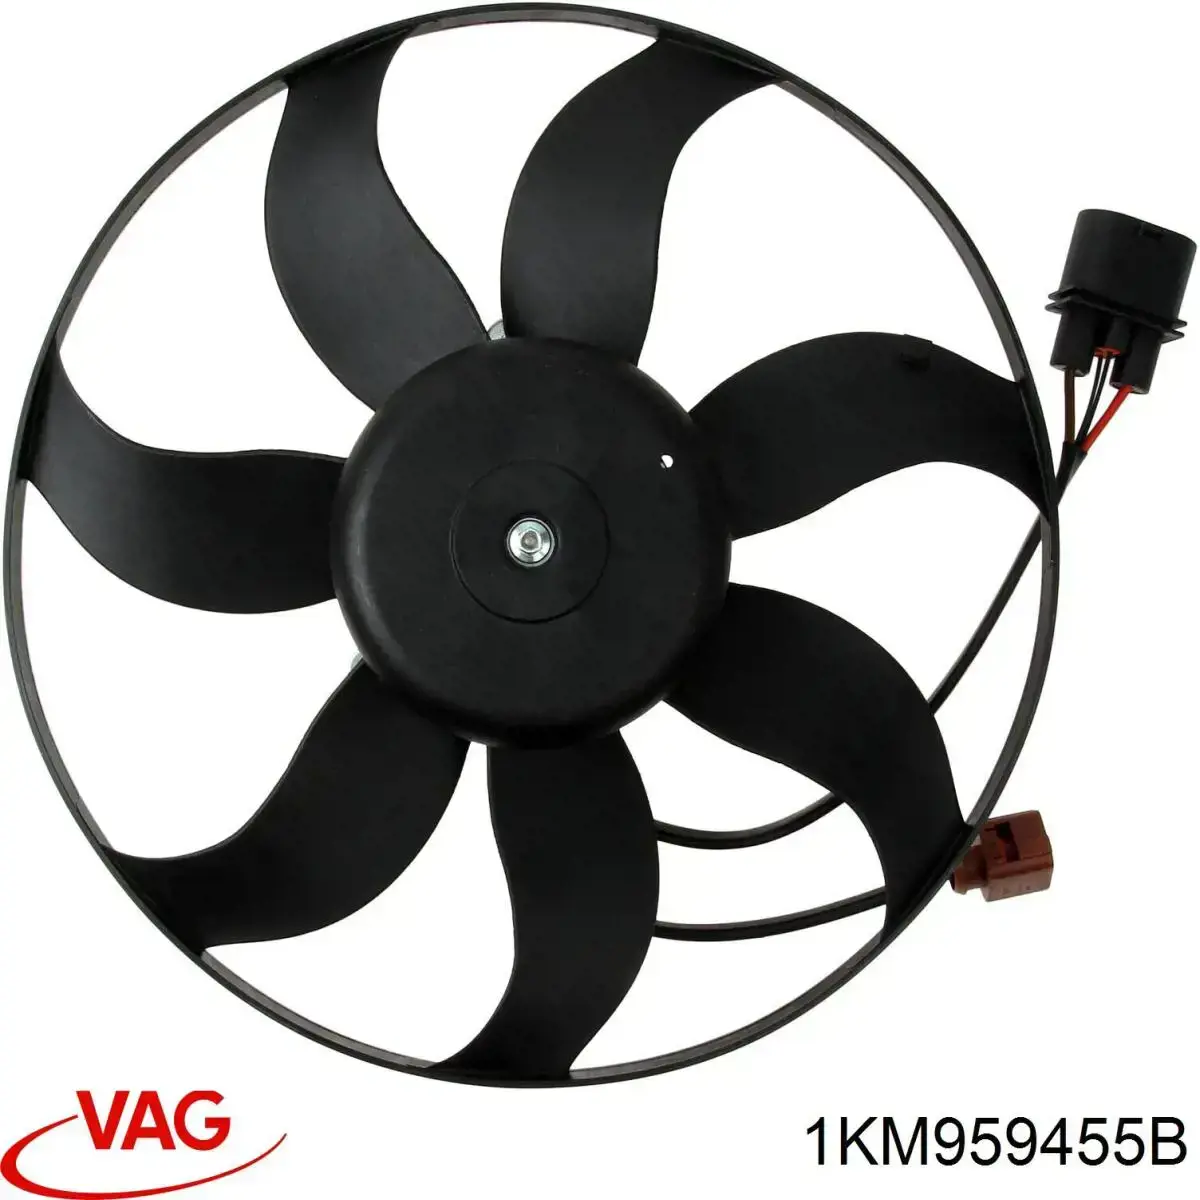 1KM959455B VAG ventilador (rodete +motor refrigeración del motor con electromotor, izquierdo)